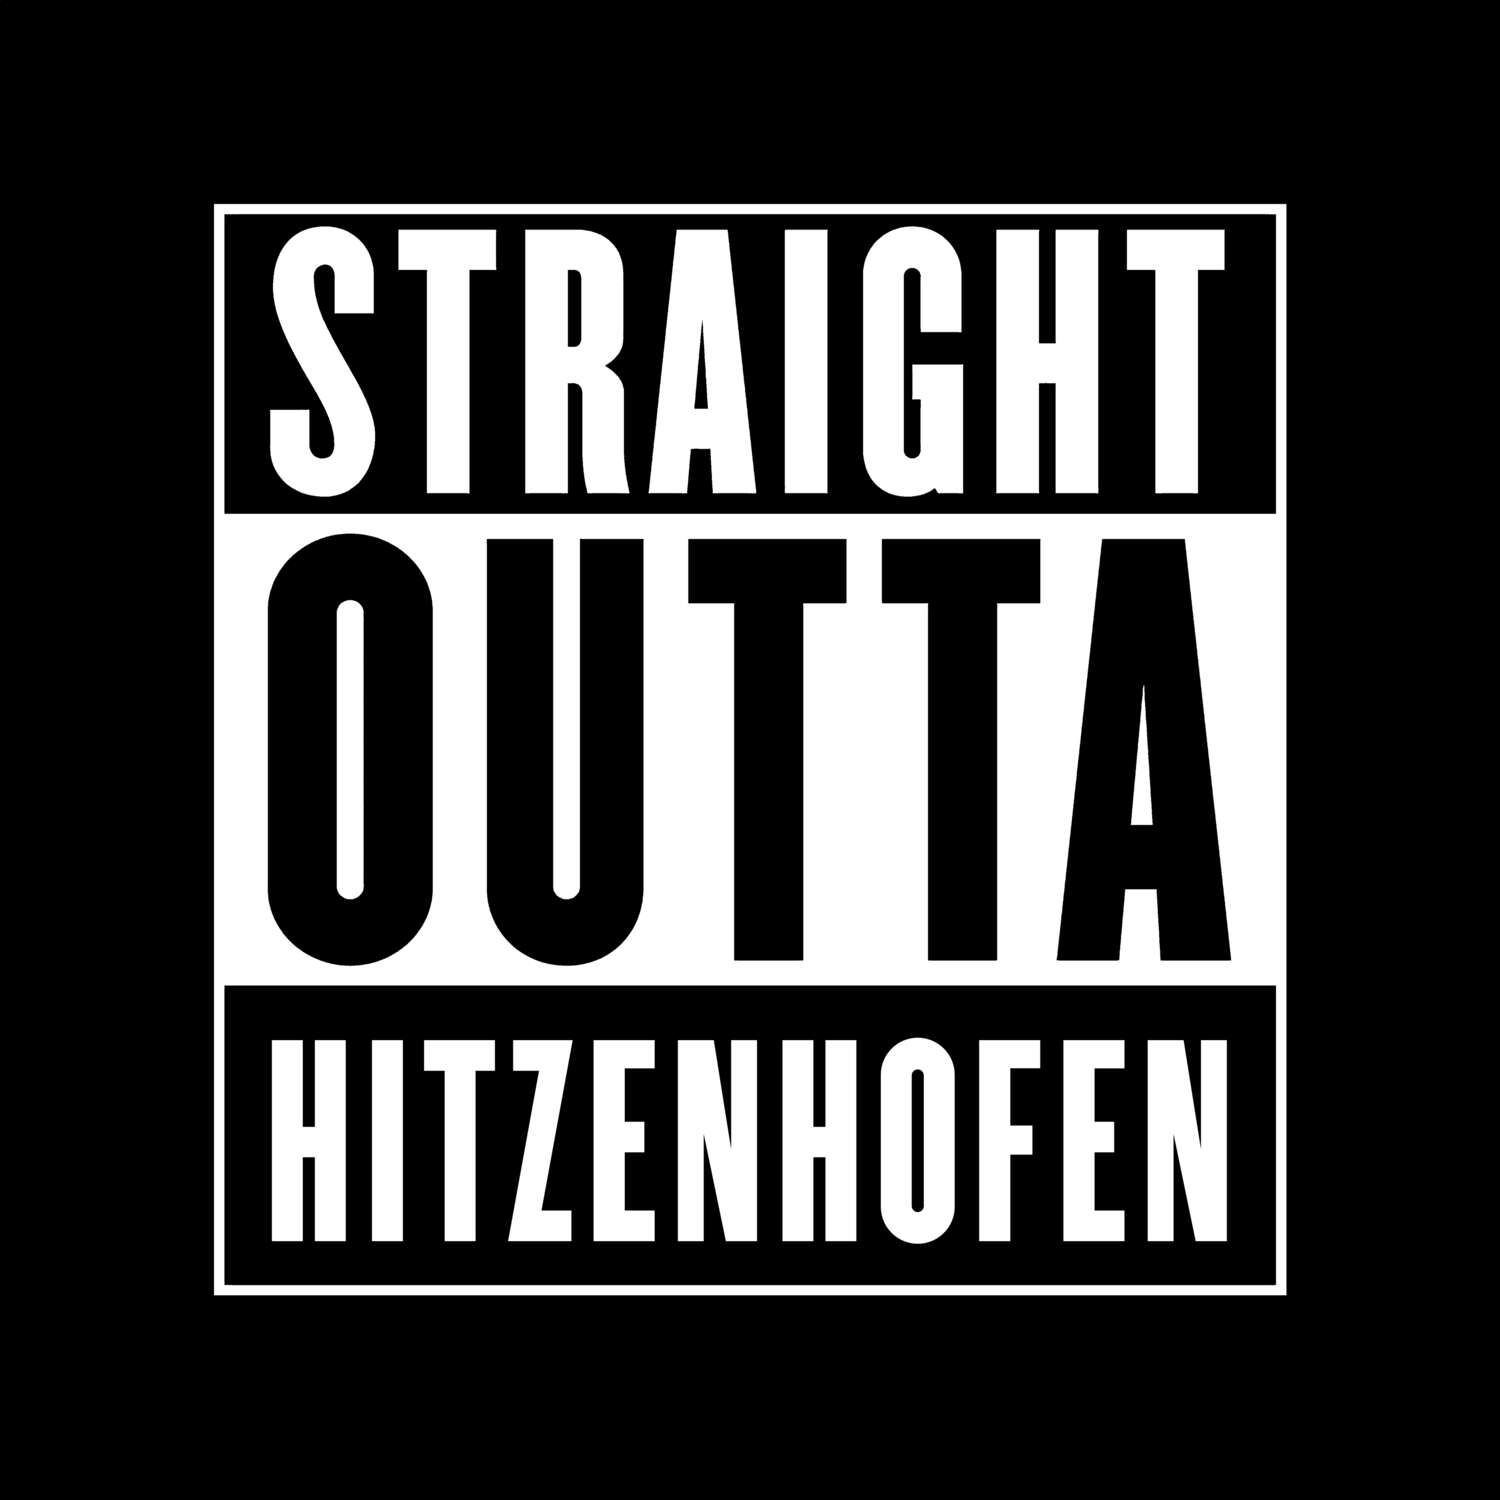 Hitzenhofen T-Shirt »Straight Outta«